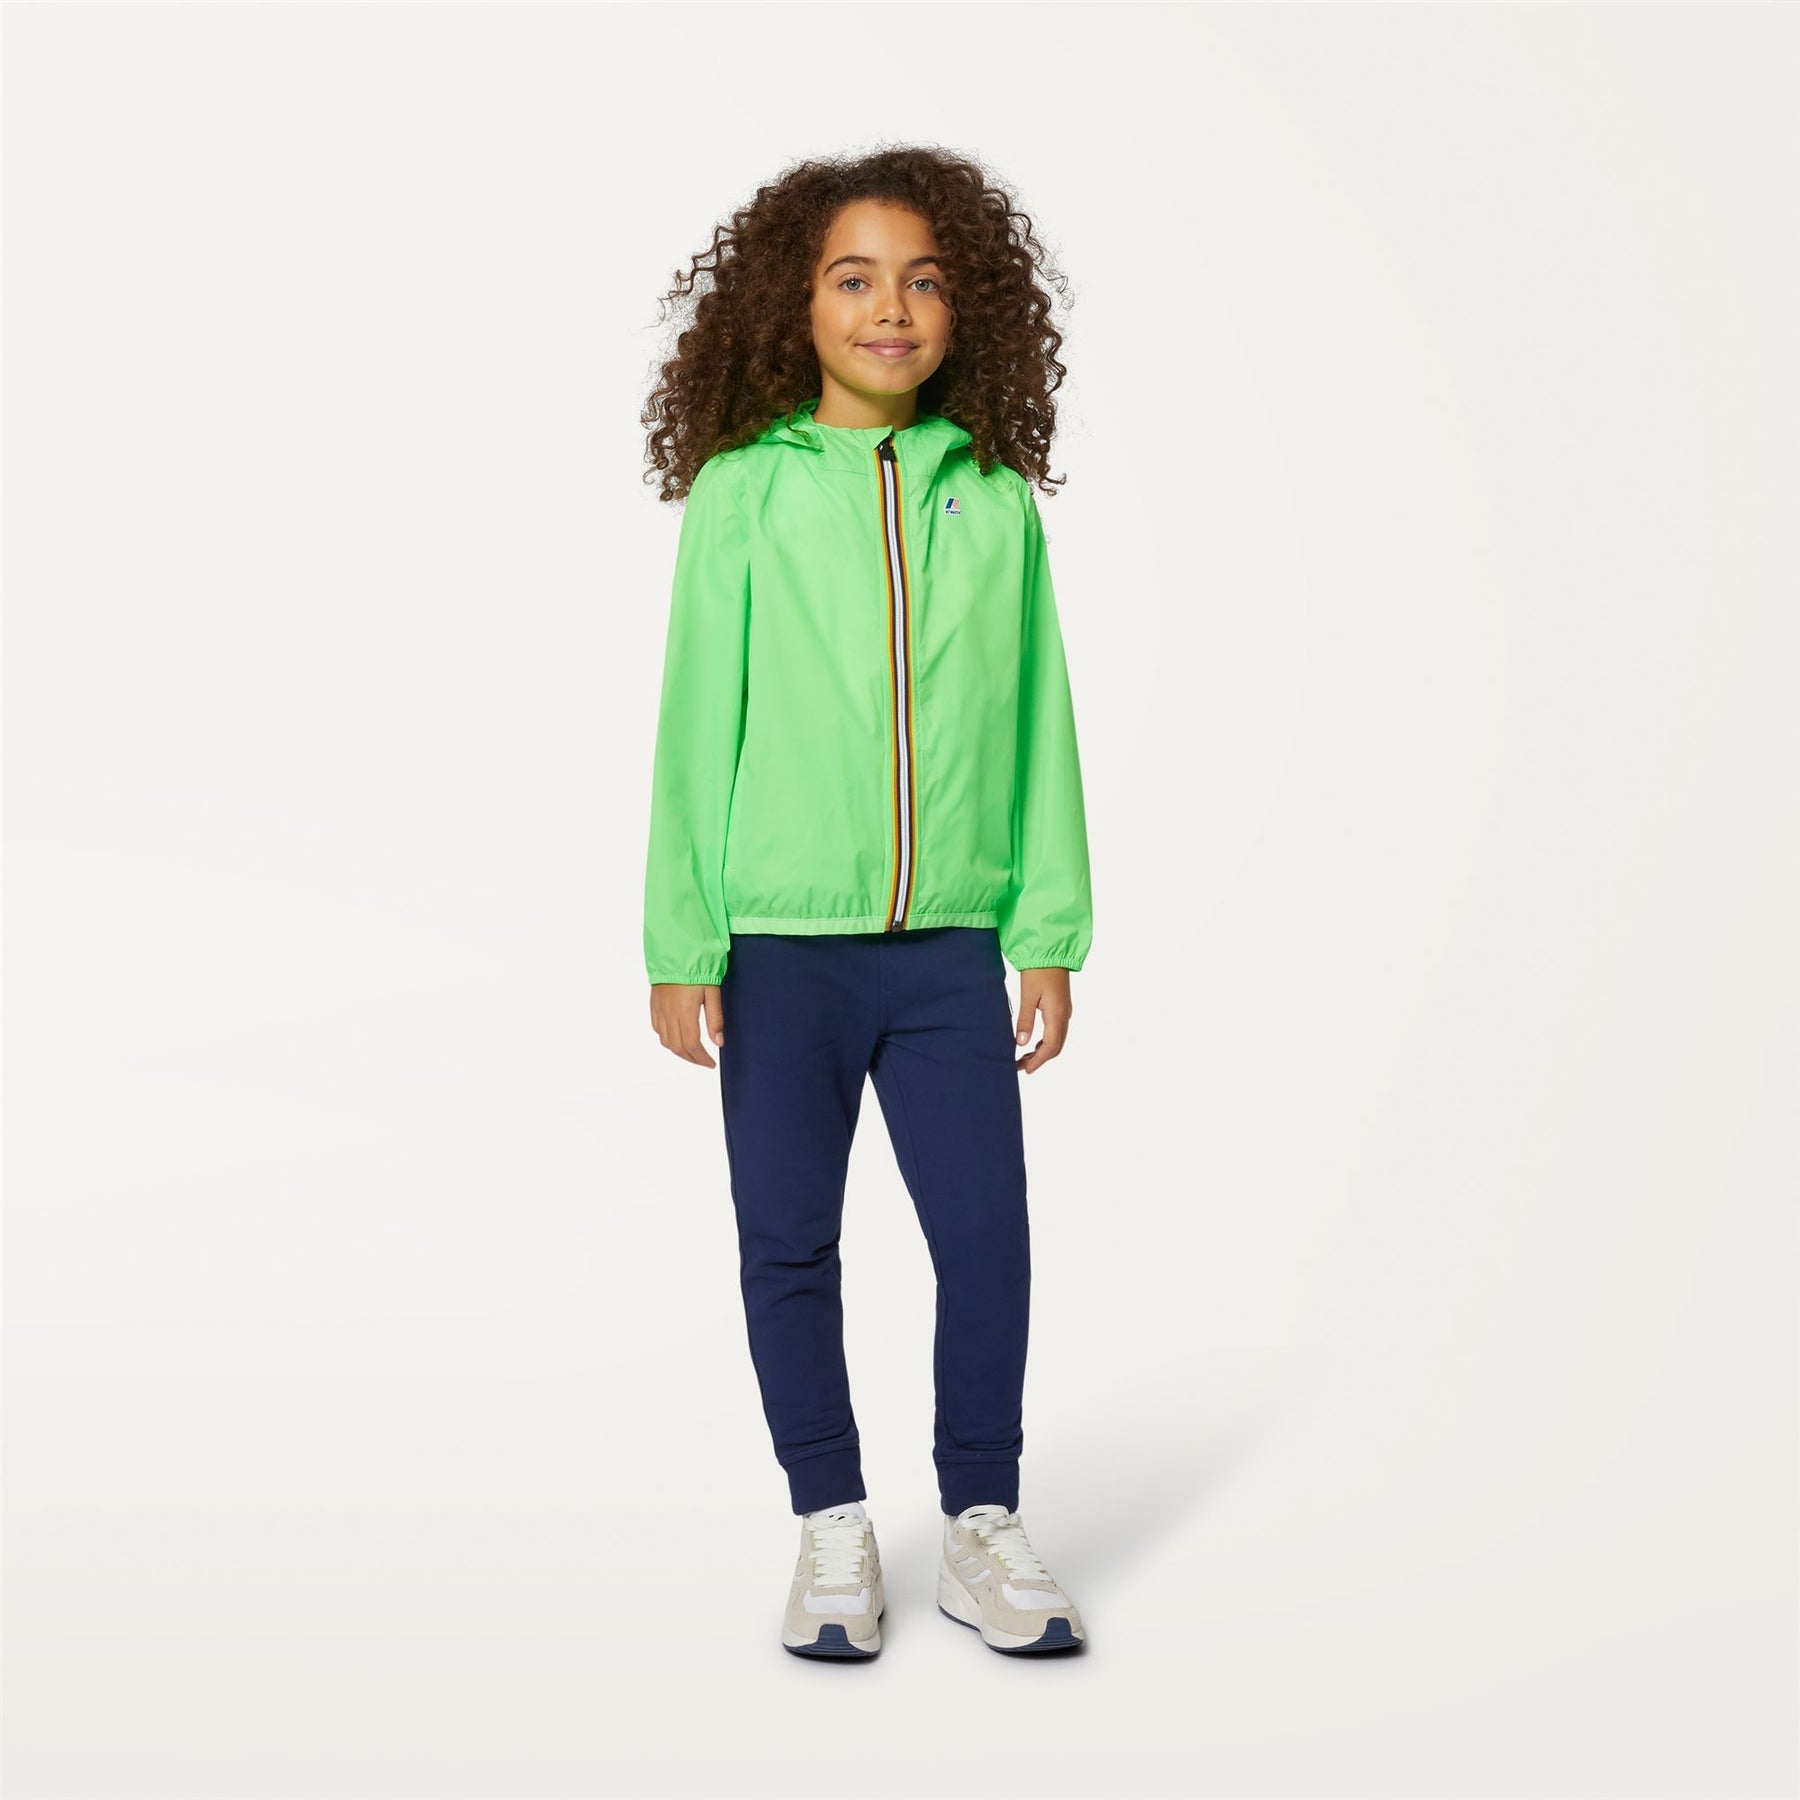 Claude - Kids Packable Full Zip Waterproof Rain Jacket in Green Fluo